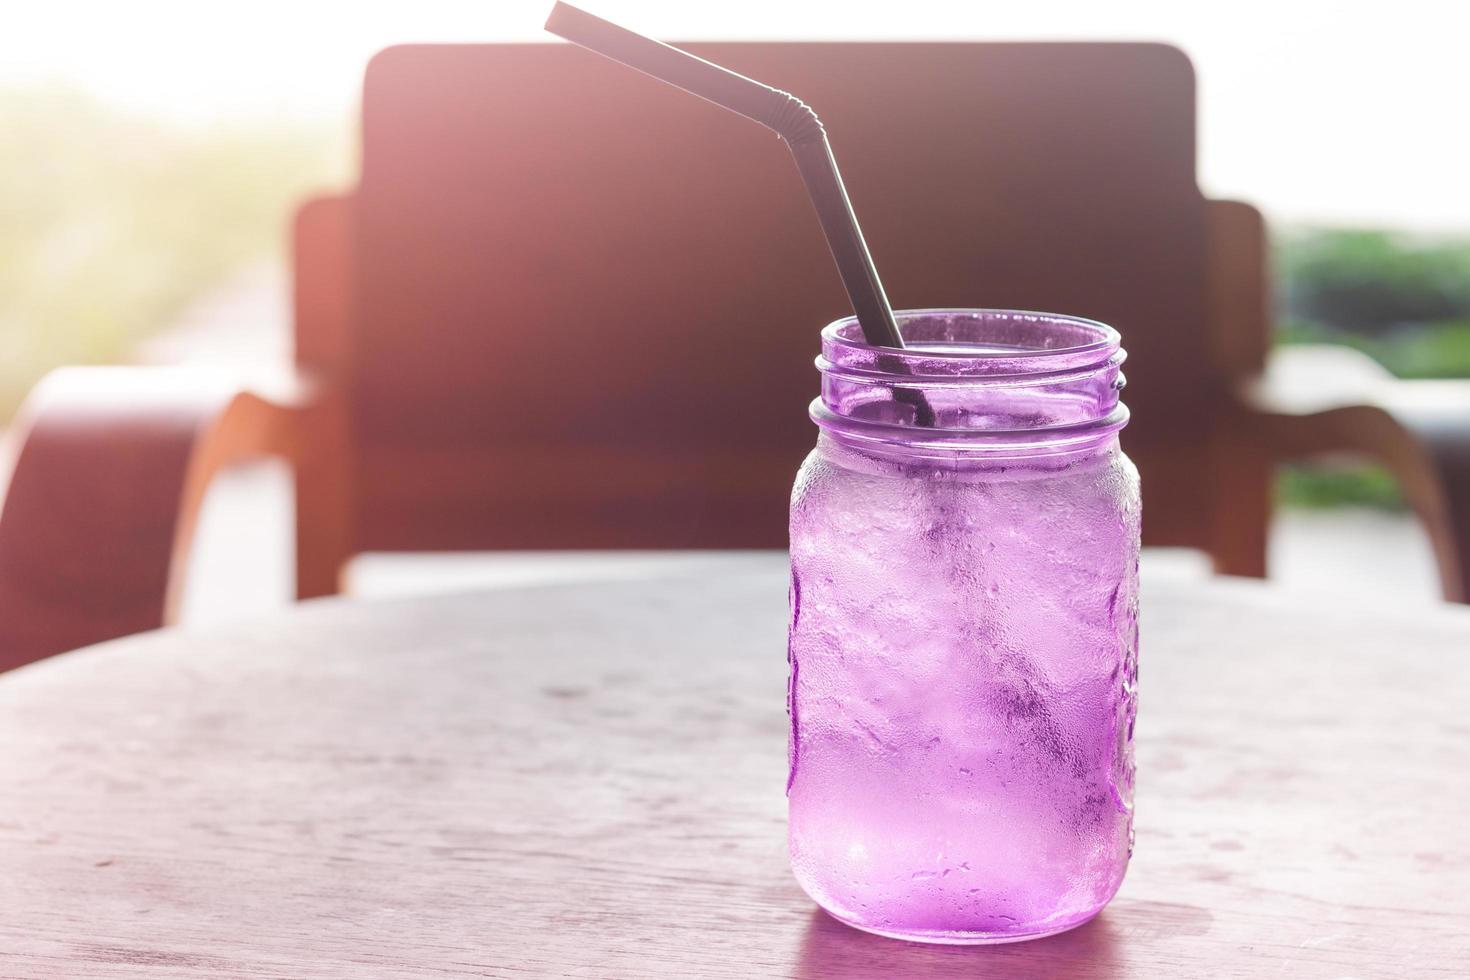 Vidrio violeta en una cafetería. foto